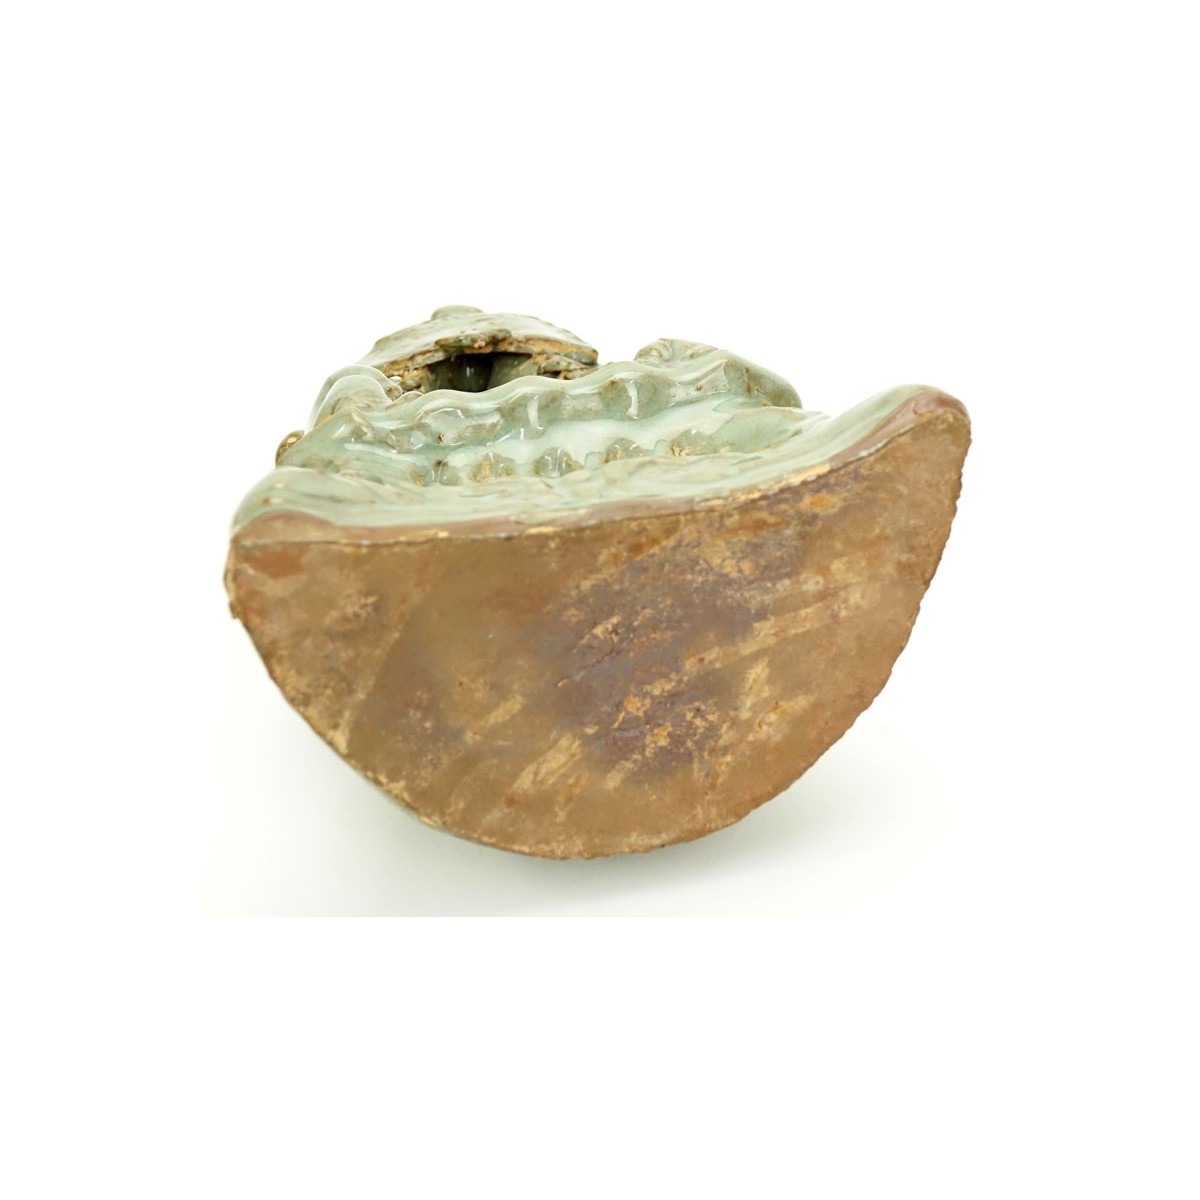 SE Asian Celadon Glazed Pottery Grotto Group